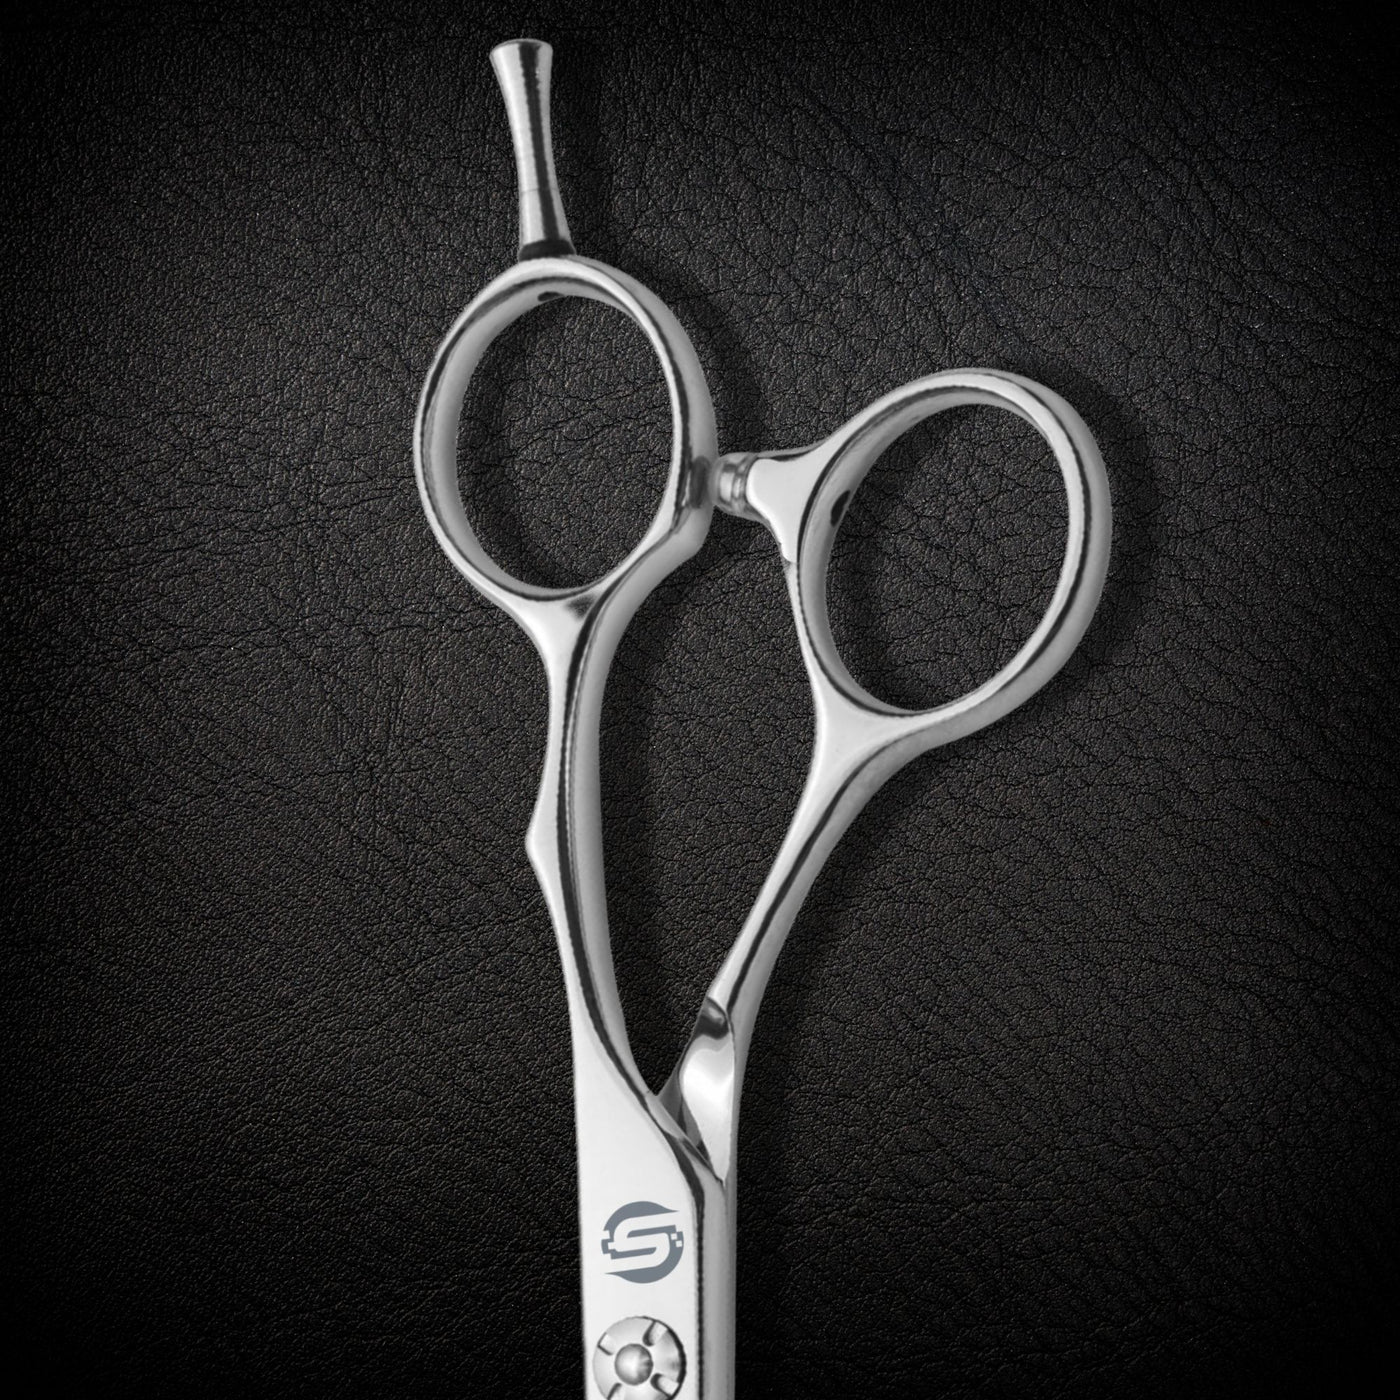 Series T - Hair Cutting Scissors